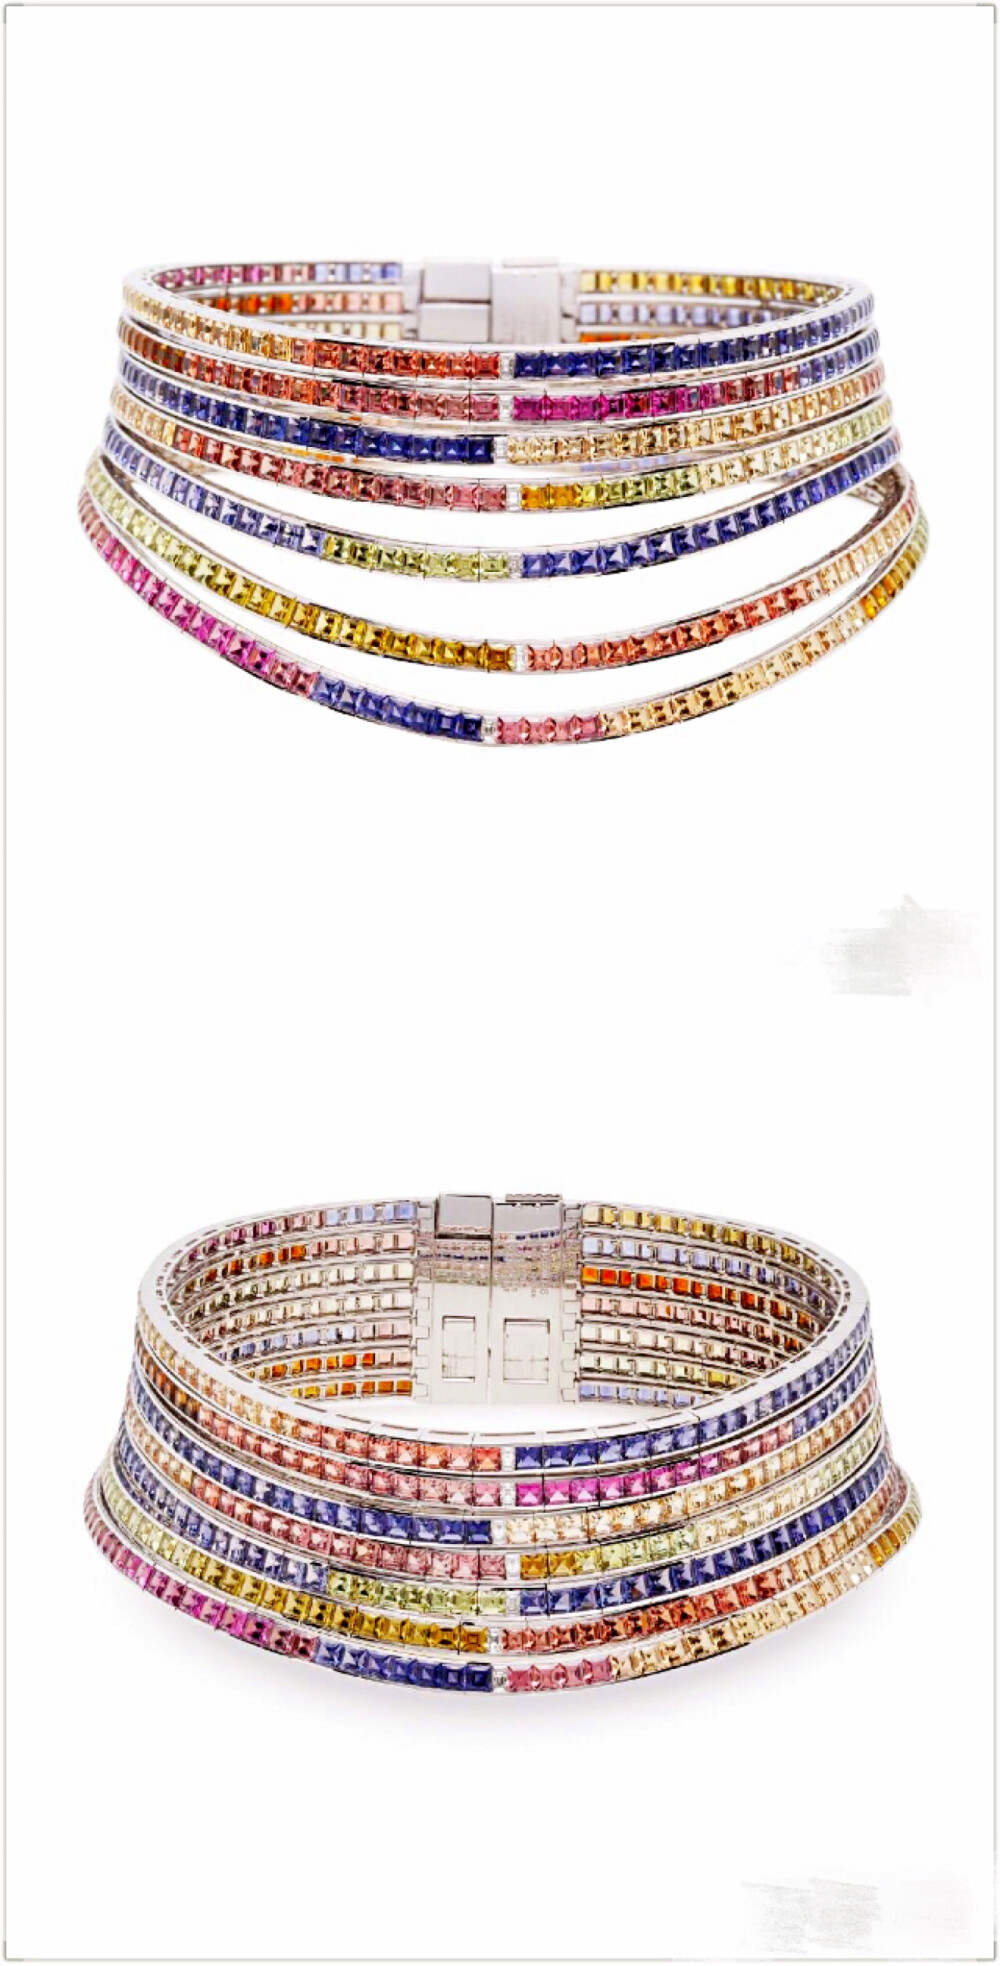 Hermès 在2016年的「HB IV Continuum」高级珠宝系列中推出了这枚 Feux du Ciel 项圈，设计灵感来自黎明时分天空的颜色，项圈名称「Feux du Ciel」在法语中意为「天空之焰」。
设计师在这件作品中使用了5种不同颜色的彩色宝石——粉色碧玺，红色石榴石、橘色托帕石、绿色碧玺和紫色堇青石，温暖明亮的色调让人联想到太阳初升时的朝霞。